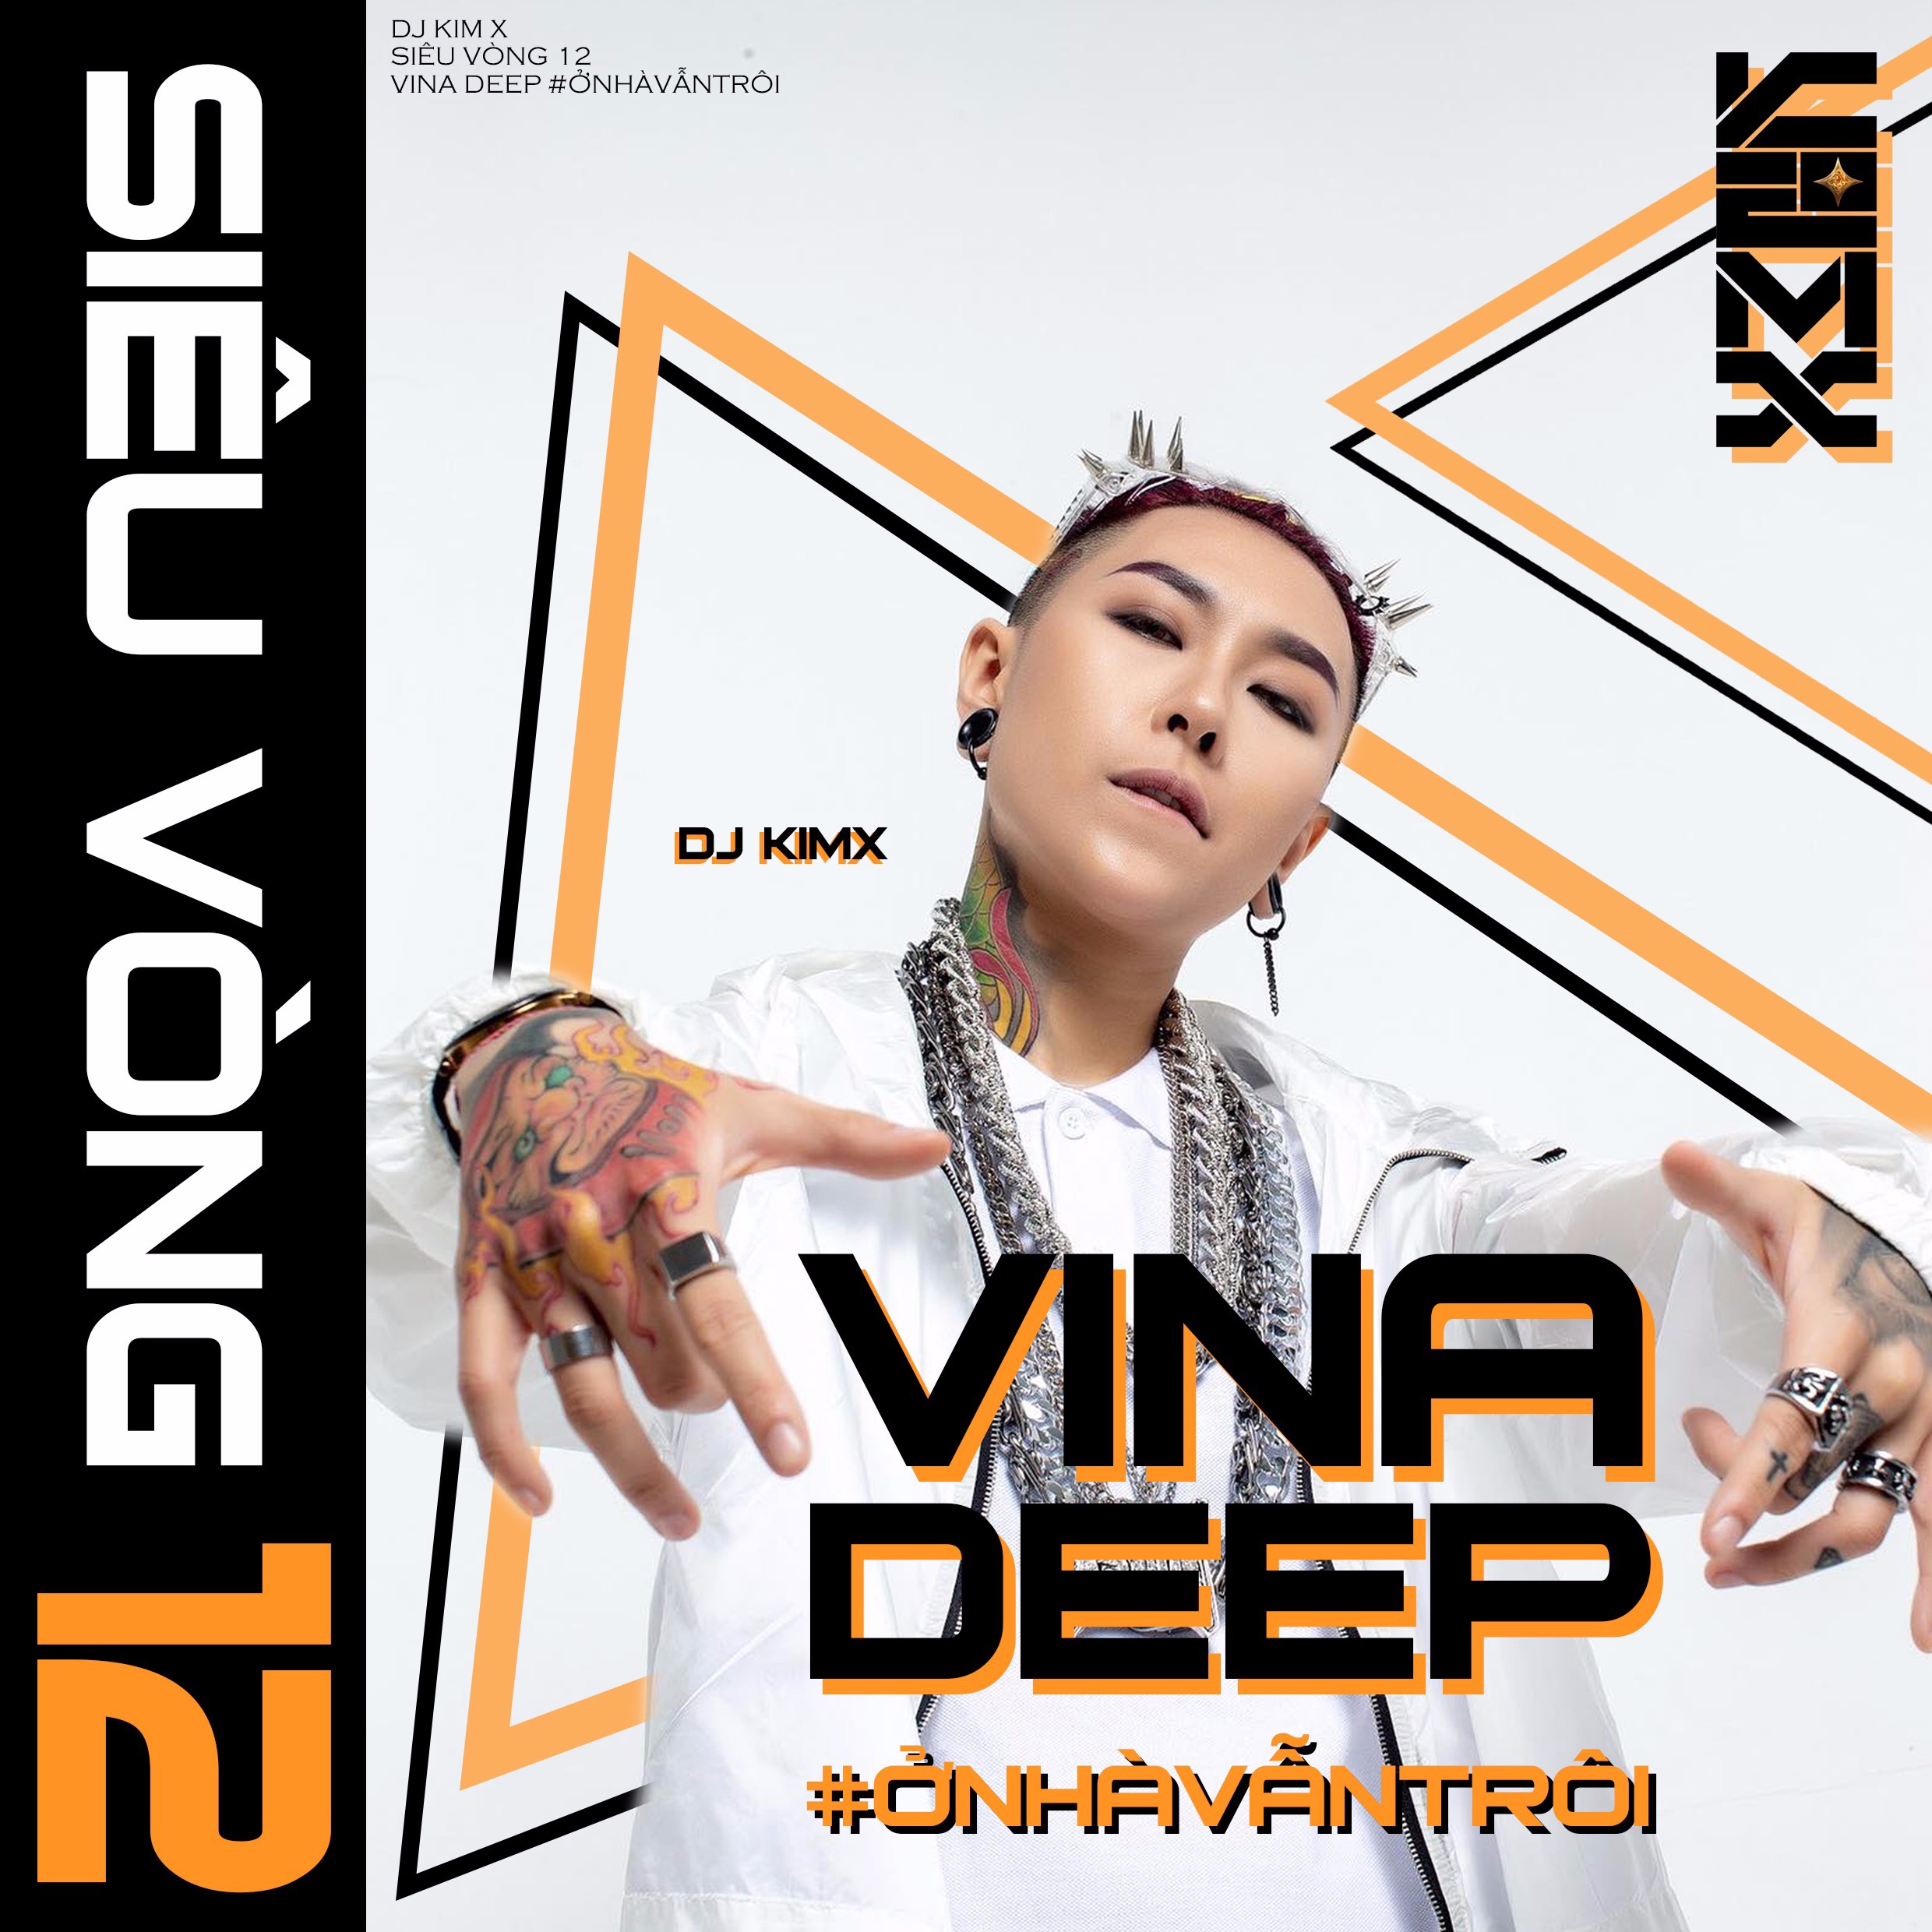 I-download #ỞNHÀVẪNTRÔI --- DJ KIMX --- MIXSET KIMX SIÊU VÒNG 12 --- VINADEEP